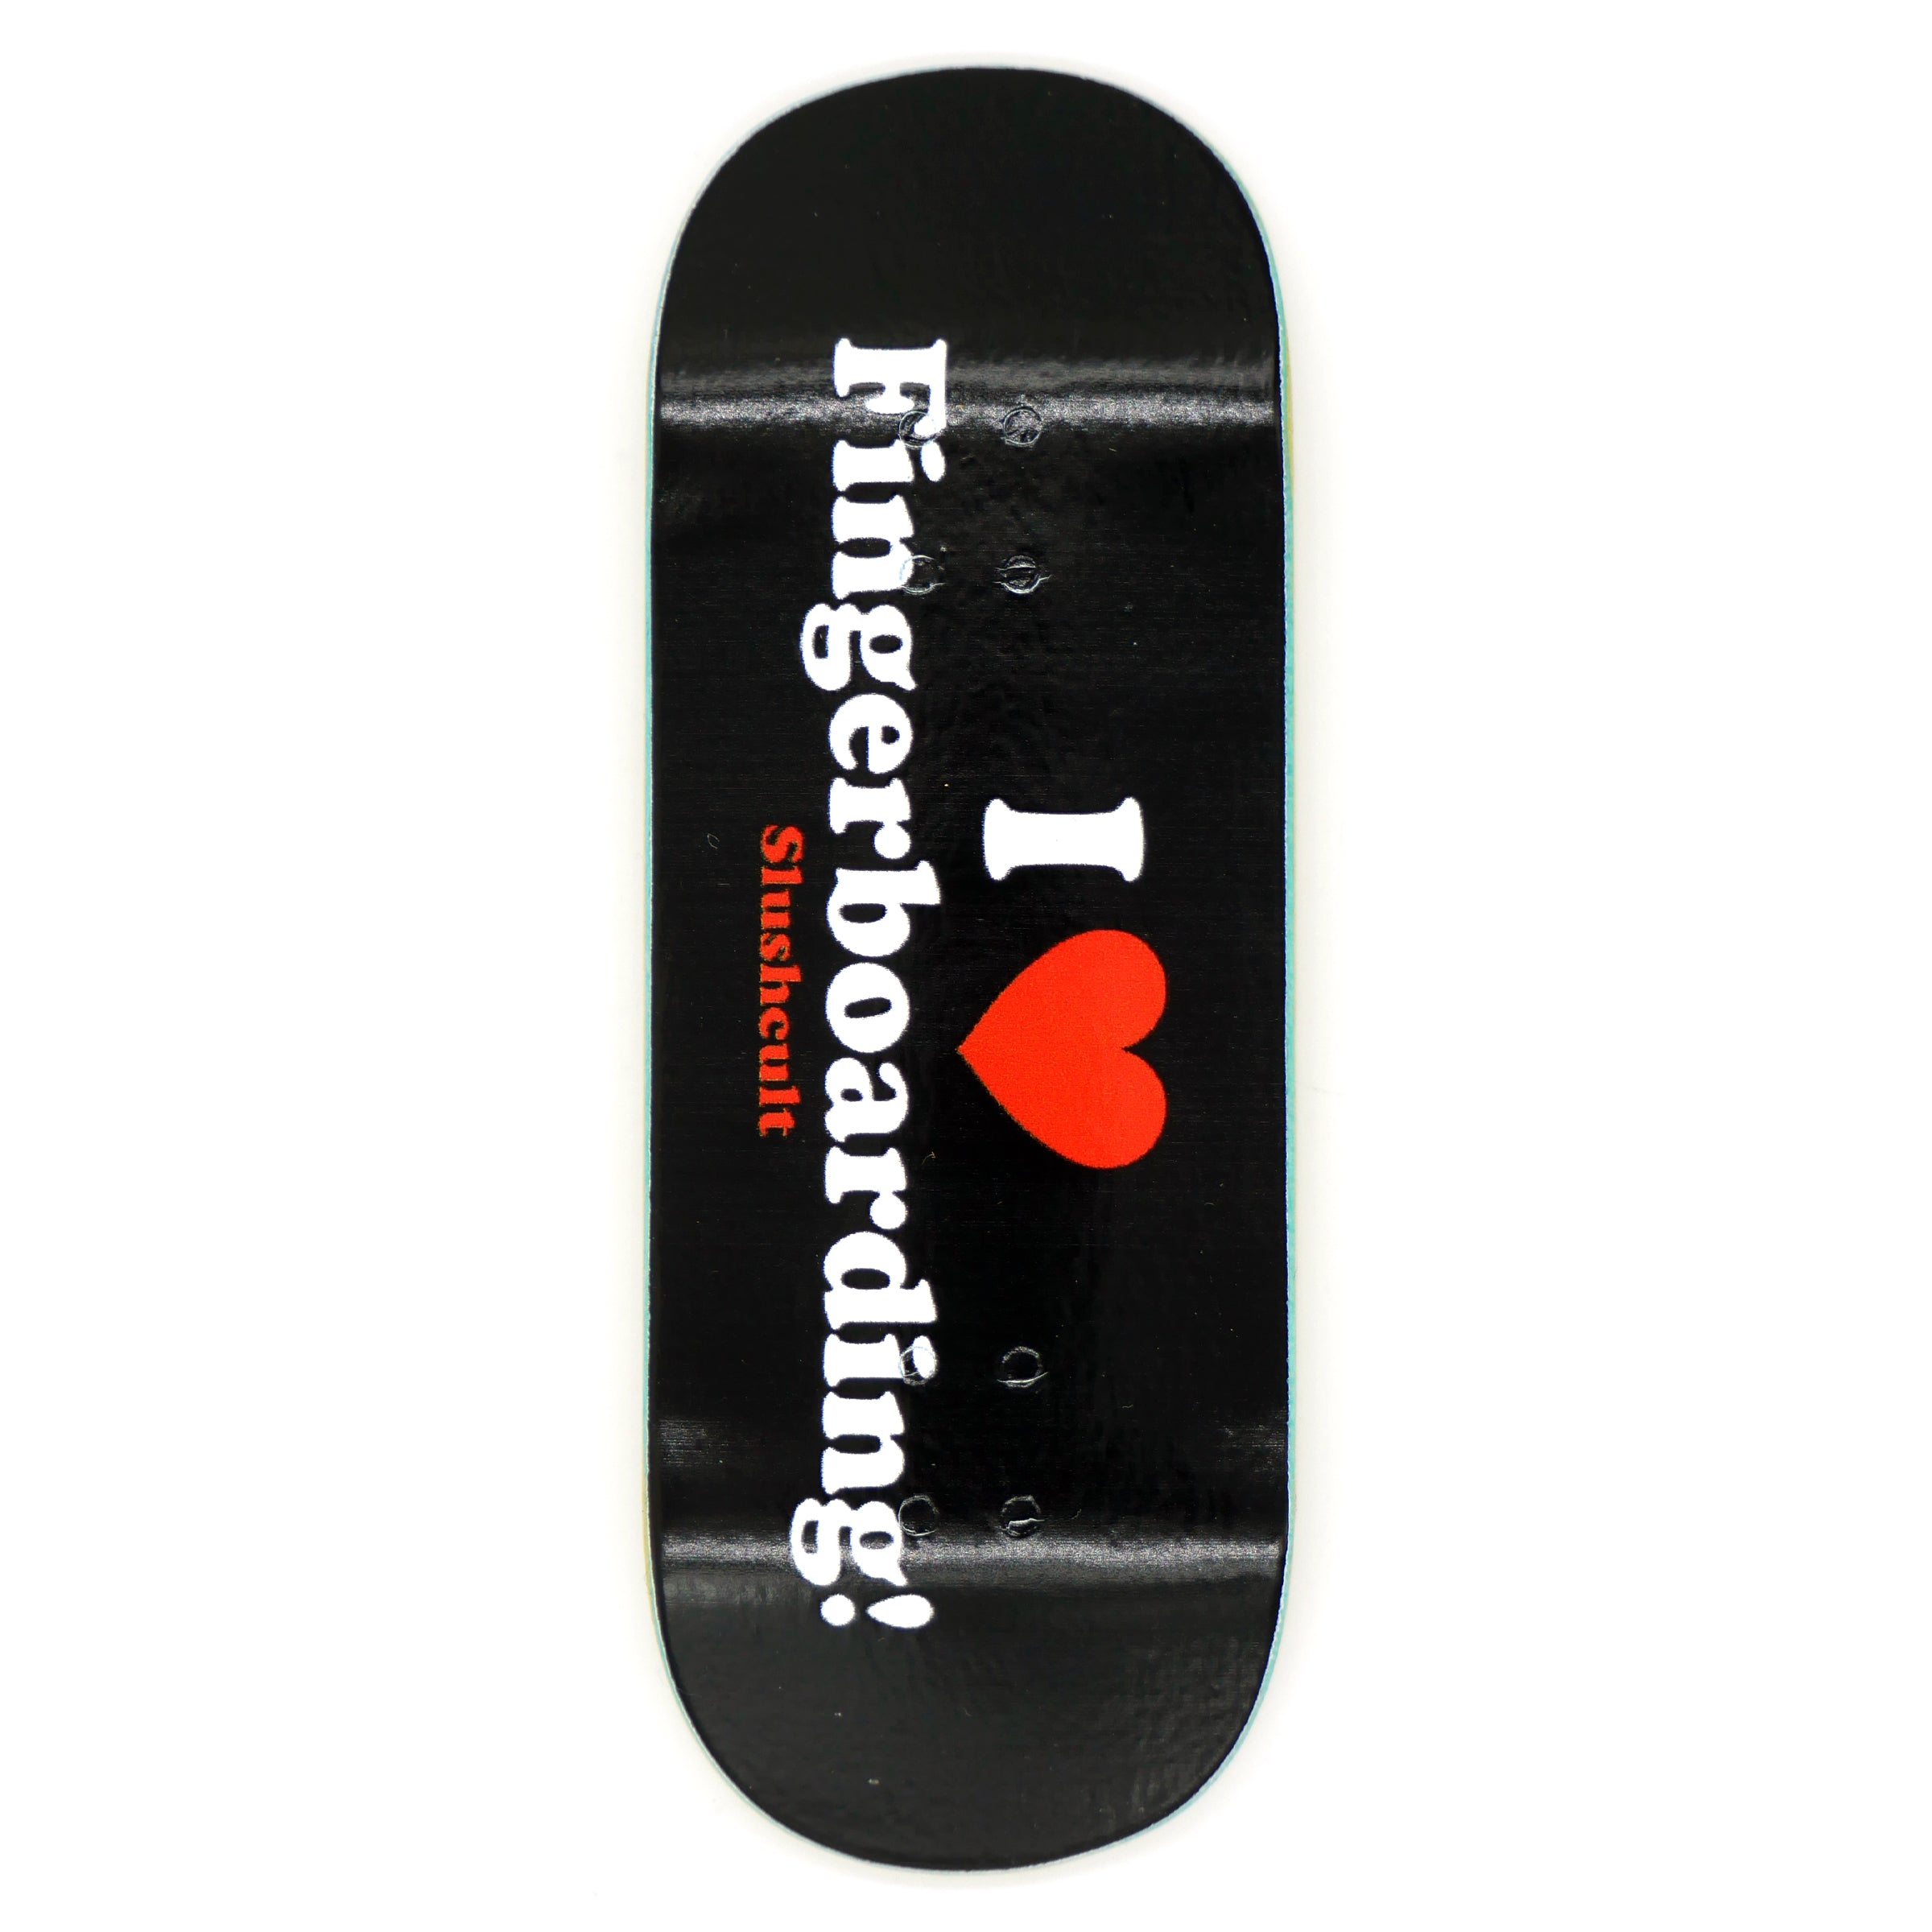 Slushcult "I Heart Fingerboarding" Shop Fingerboard Deck (Black) MINI Skate Shop Slushcult    Slushcult